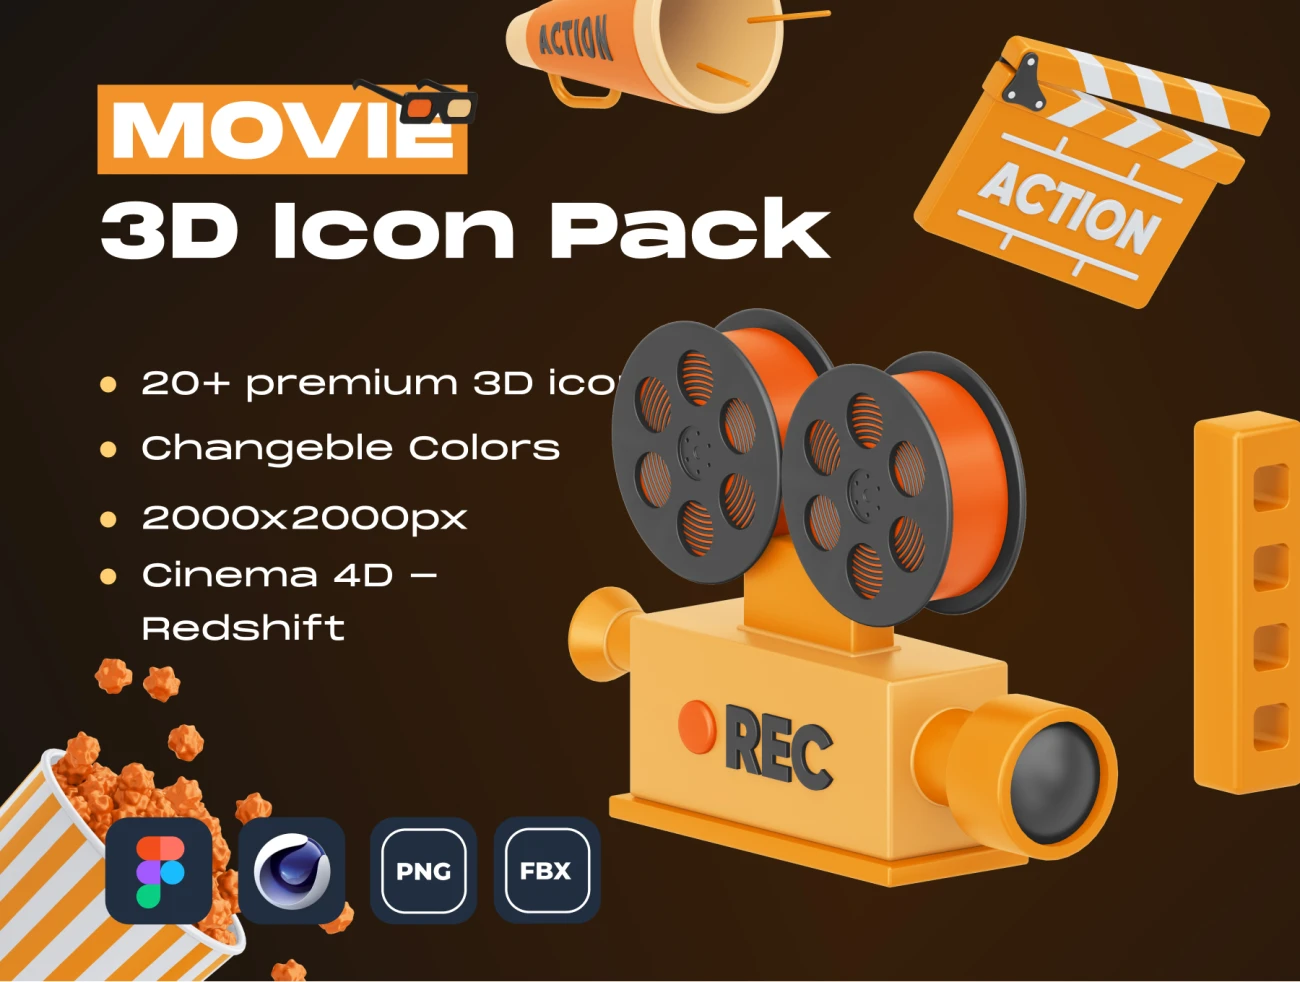 29款电影3D图标 MOVIE! 3D Icon Pack-3D/图标、场景插画、插画、硬件设备、营销创业-到位啦UI